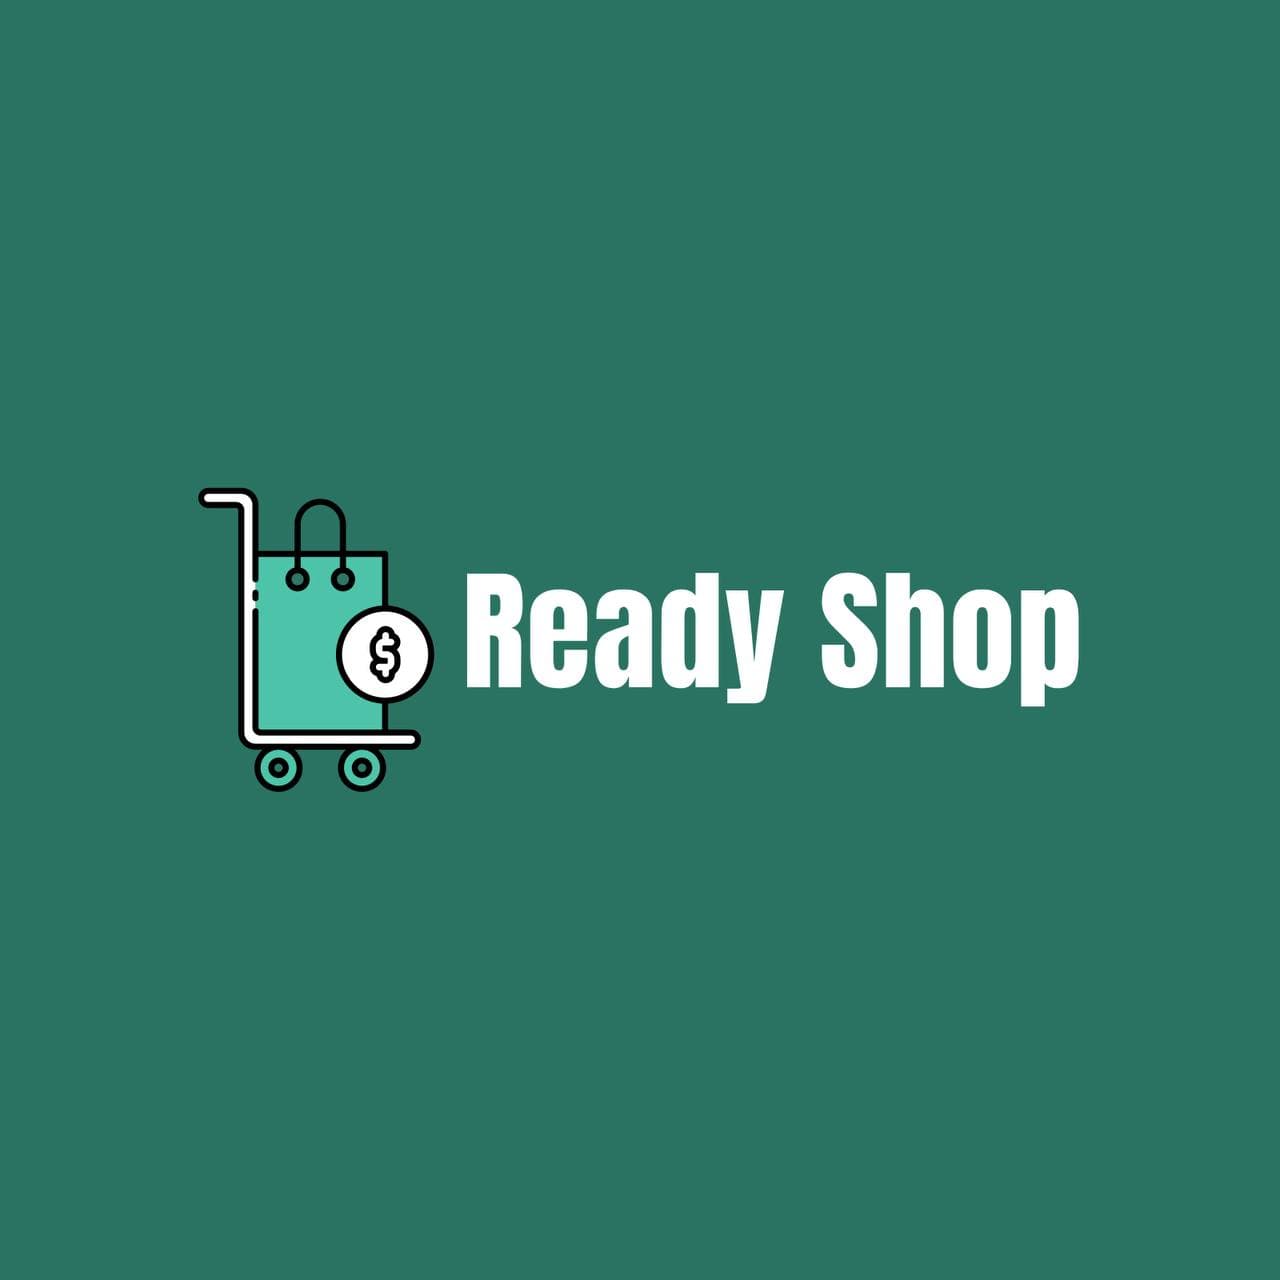 Ready Shop компания по созданию интернет-магазинов Логотип(logo)